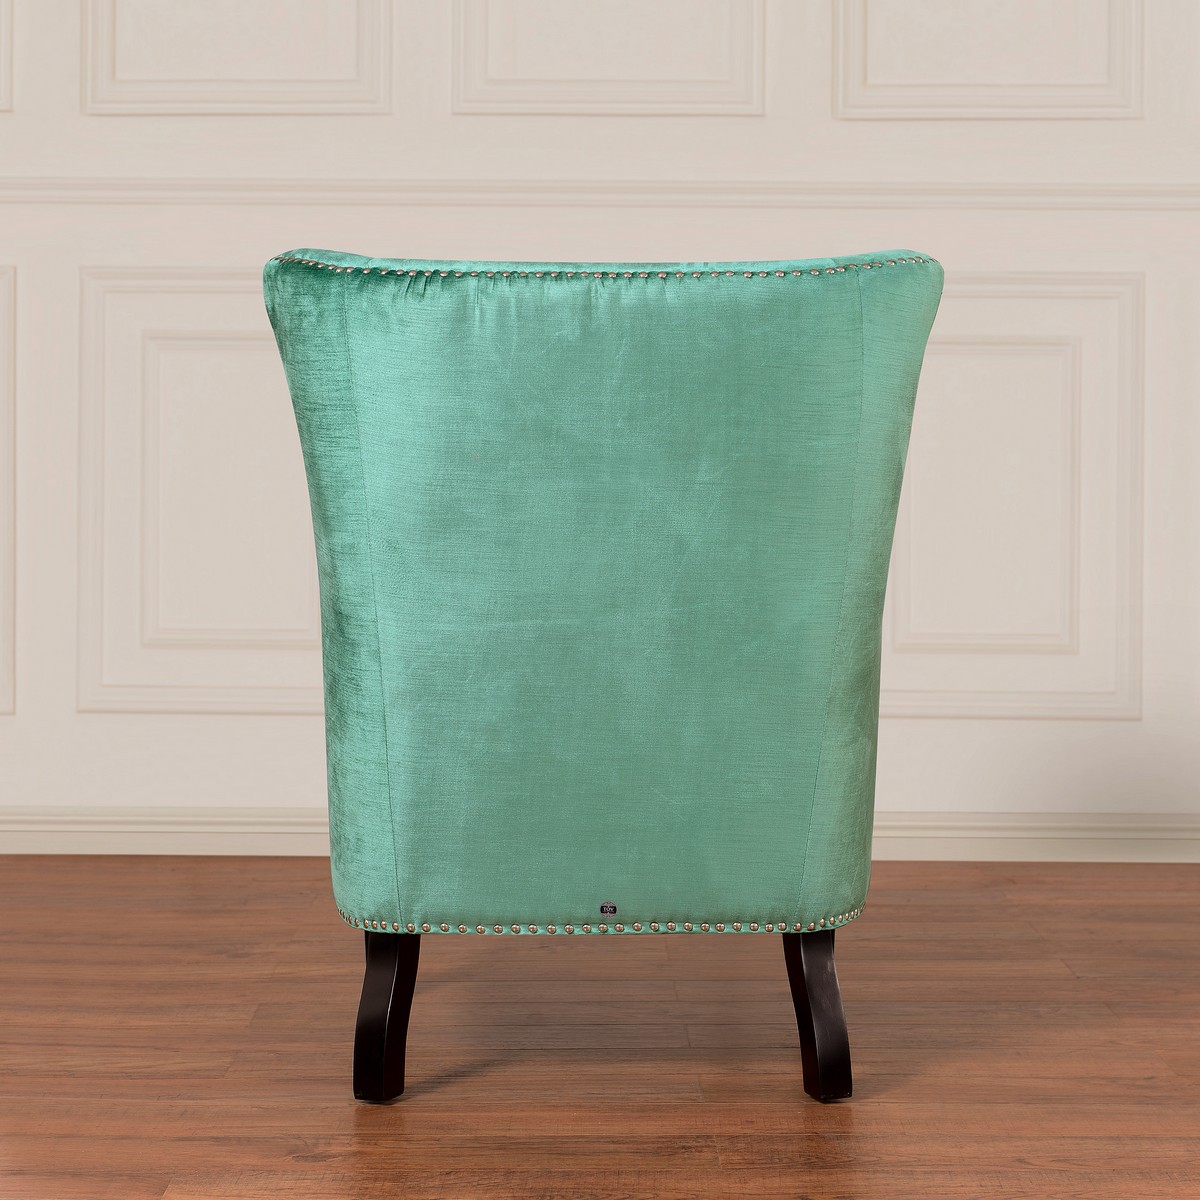 TOV Furniture Soho Turquoise Velvet Wing Chair